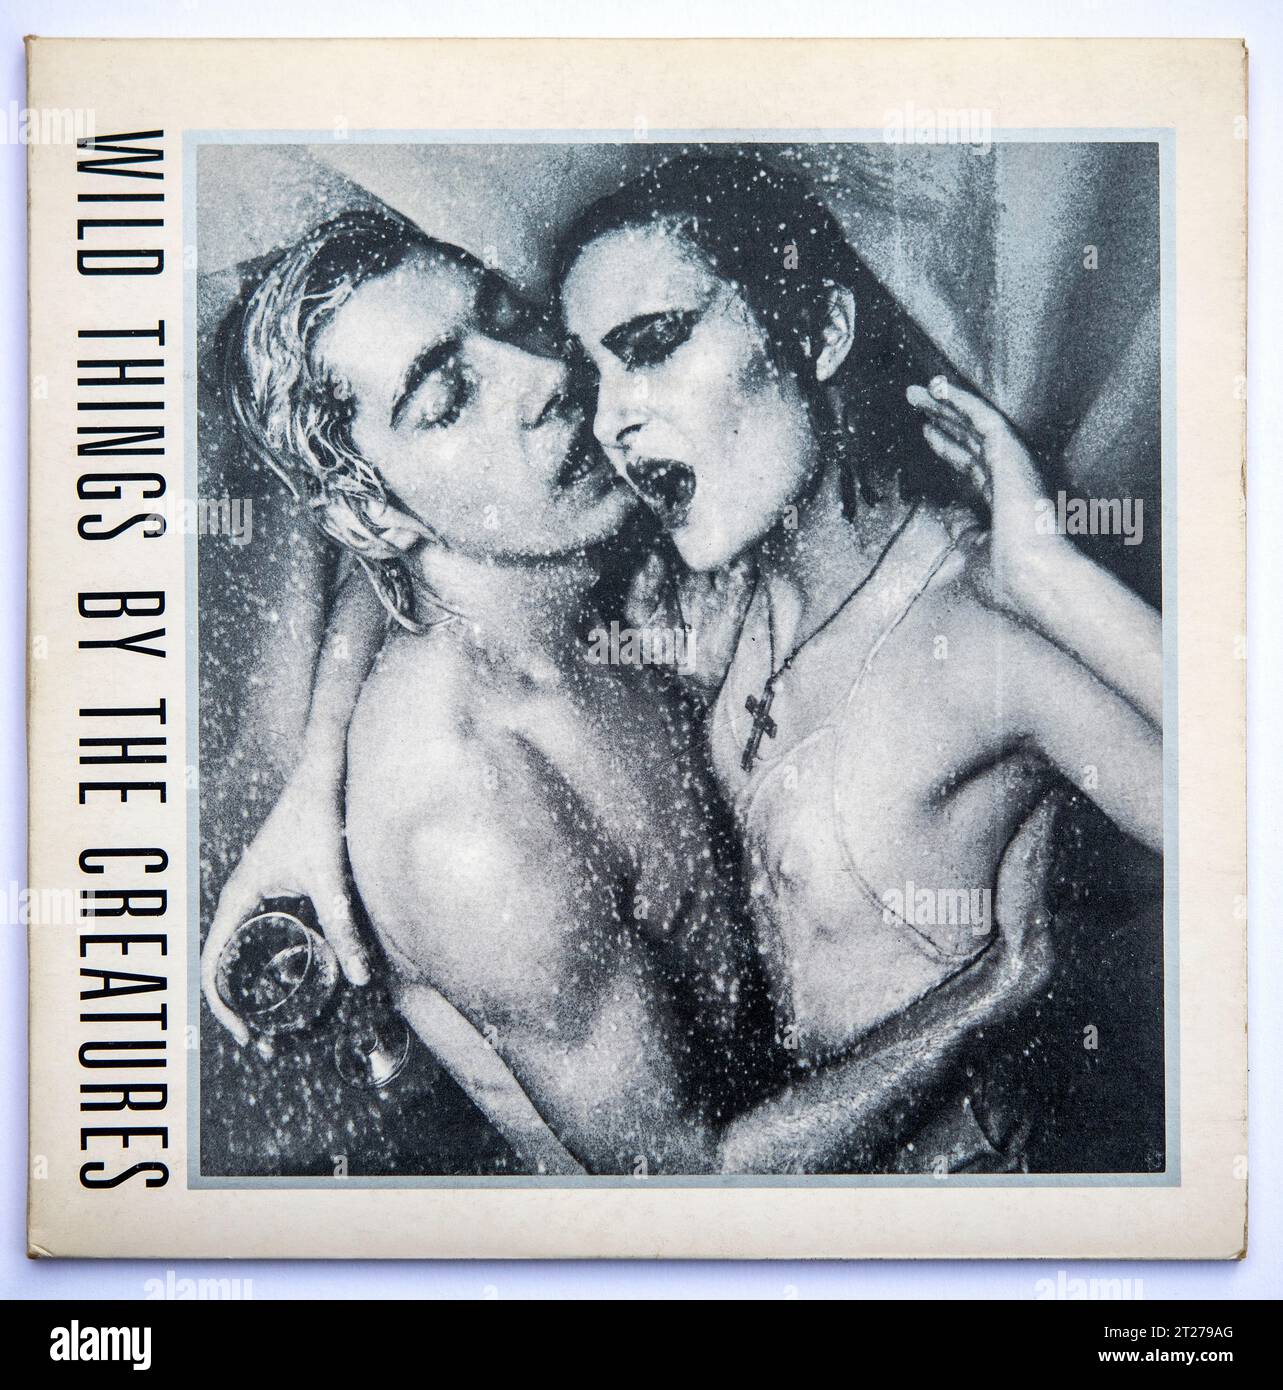 Copertina della versione single da sette pollici di Wild Things by the Creatures, pubblicata nel 1981 Foto Stock